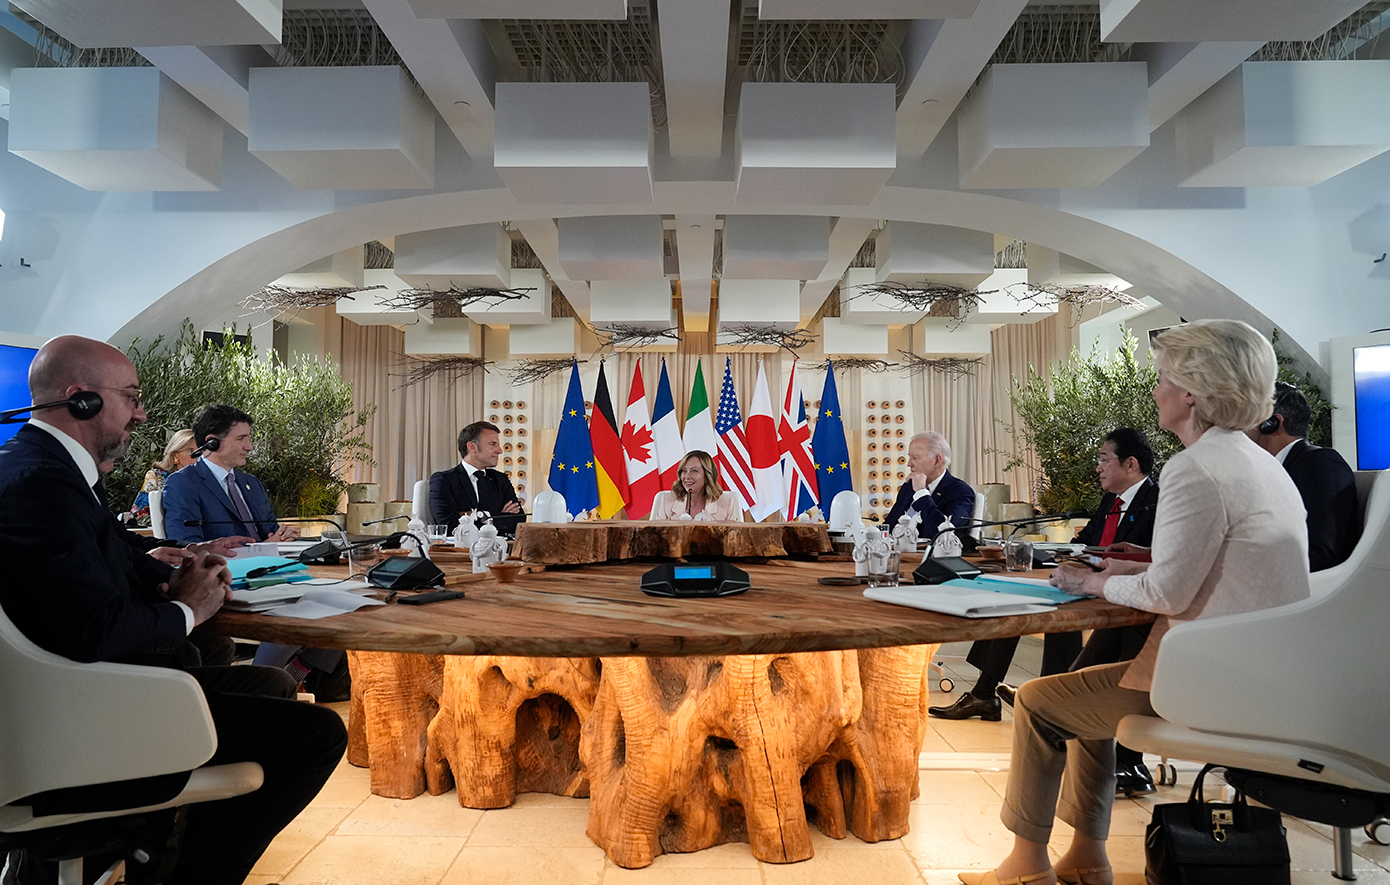 Συμφωνία στην G7 να χρησιμοποιηθούν δεσμευμένα ρωσικά περιουσιακά στοιχεία στον πόλεμο της Ουκρανίας